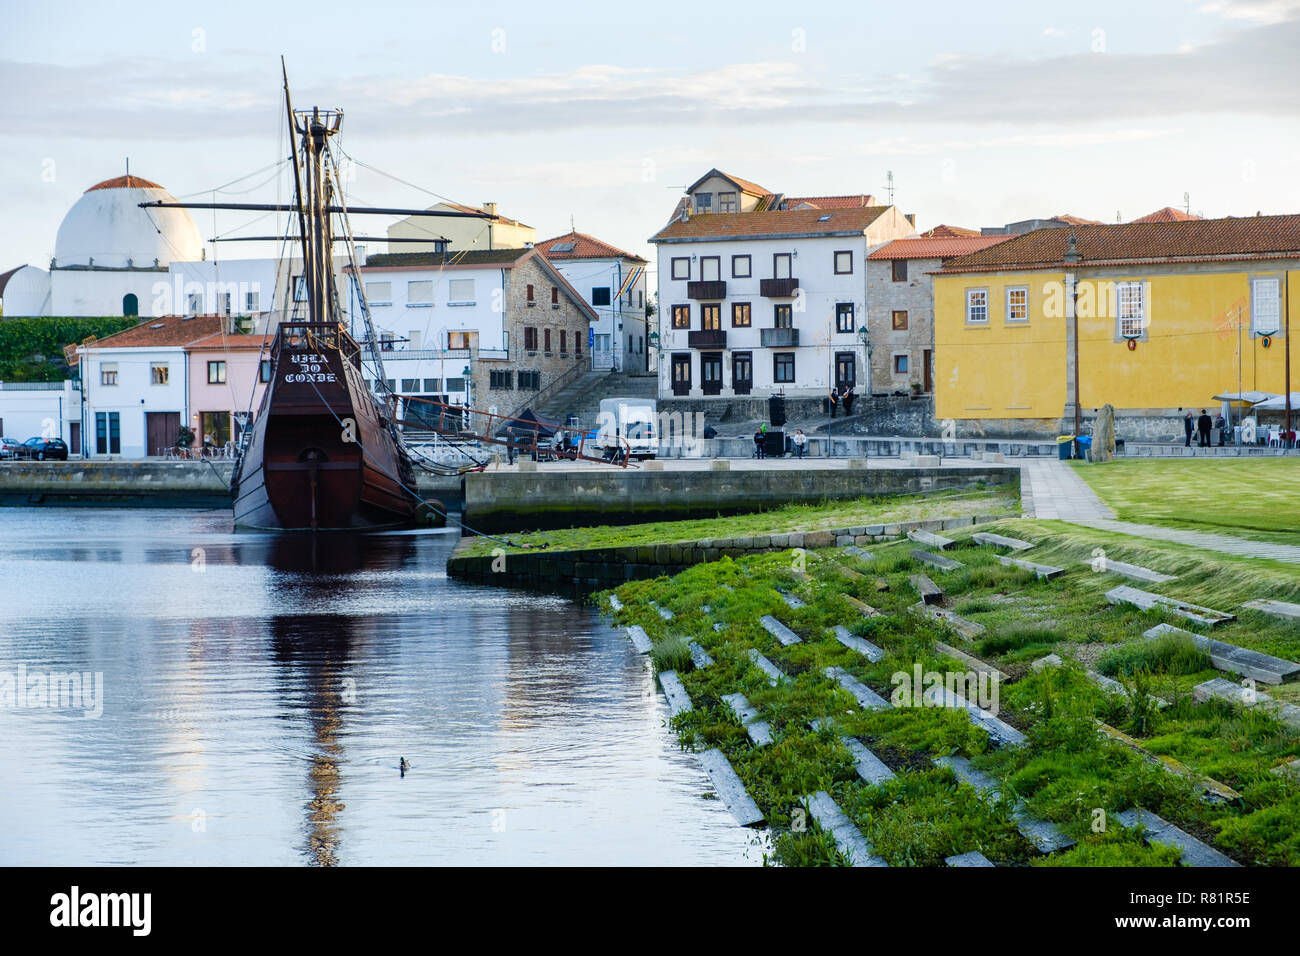 Vila do Conde, Portugal - 01 juin 2018 : journée ensoleillée par le navire portugais du 16ème siècle, tour de bateau Porto district, Portugal Banque D'Images